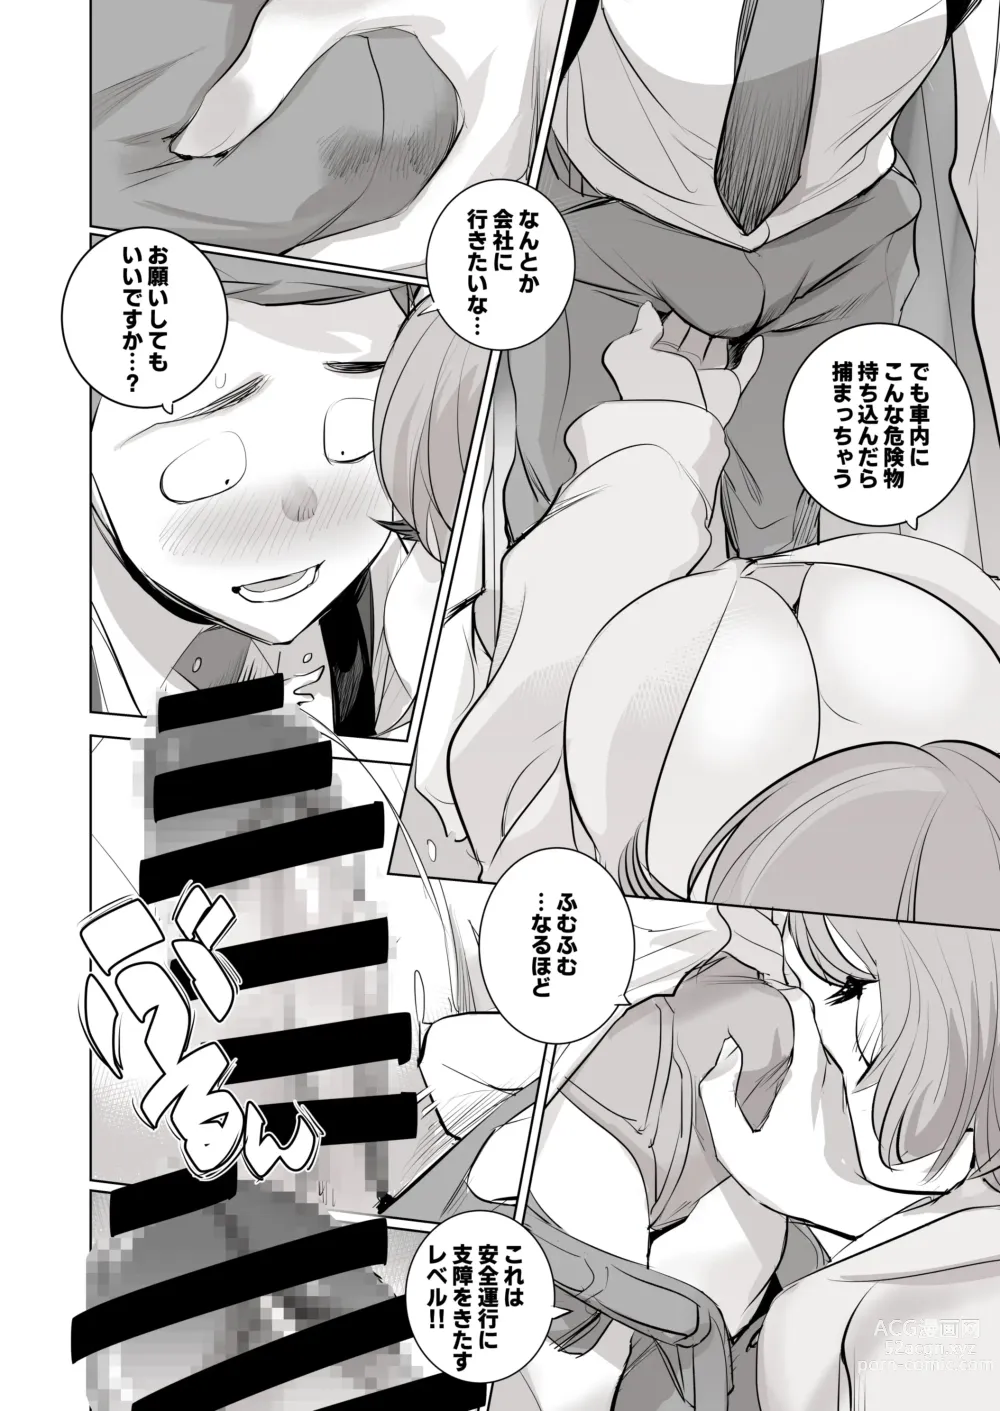 Page 7 of doujinshi 人気同人作家の妻とラブラブ新婚性活でも妻が好きすぎてNTRしてしまうボクなんです